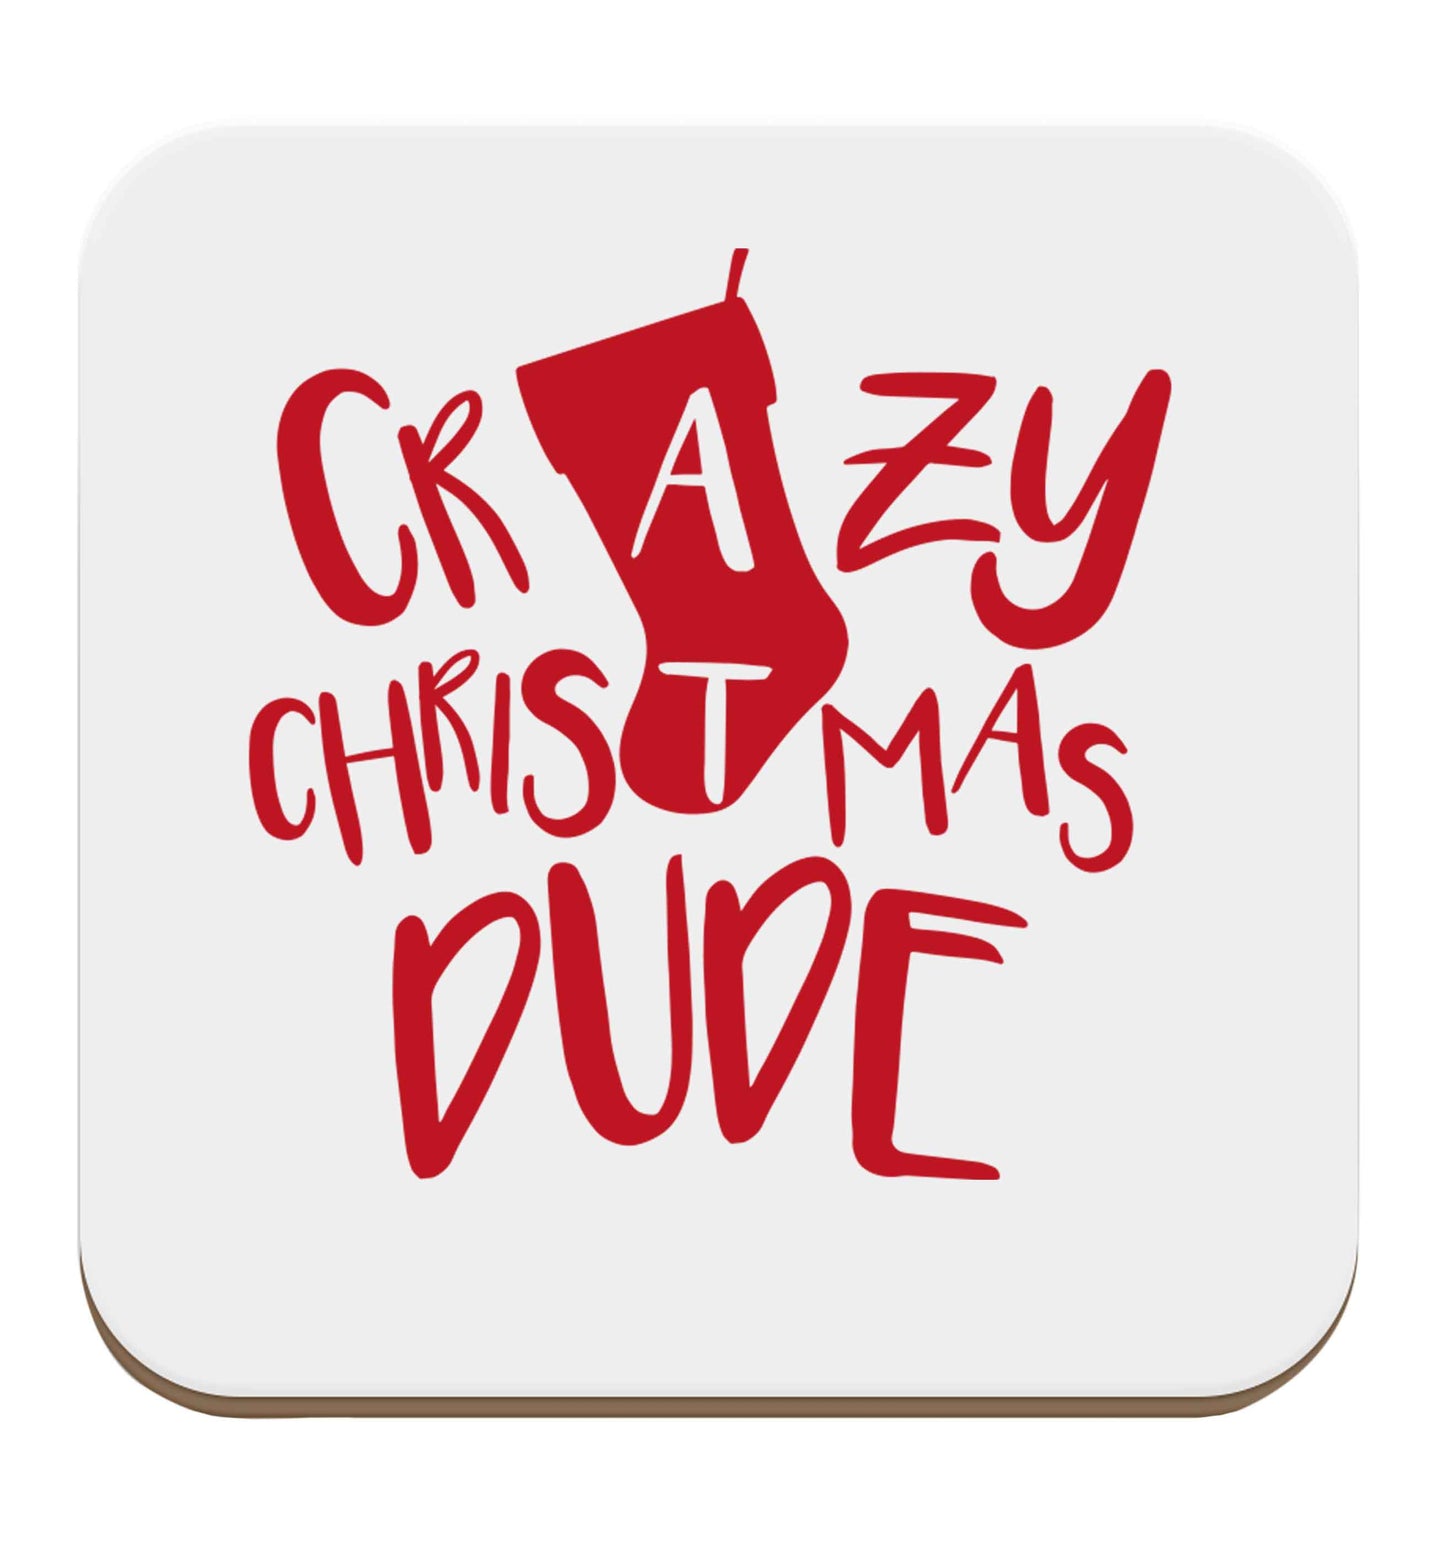 Crazy Christmas Dude set of four coasters